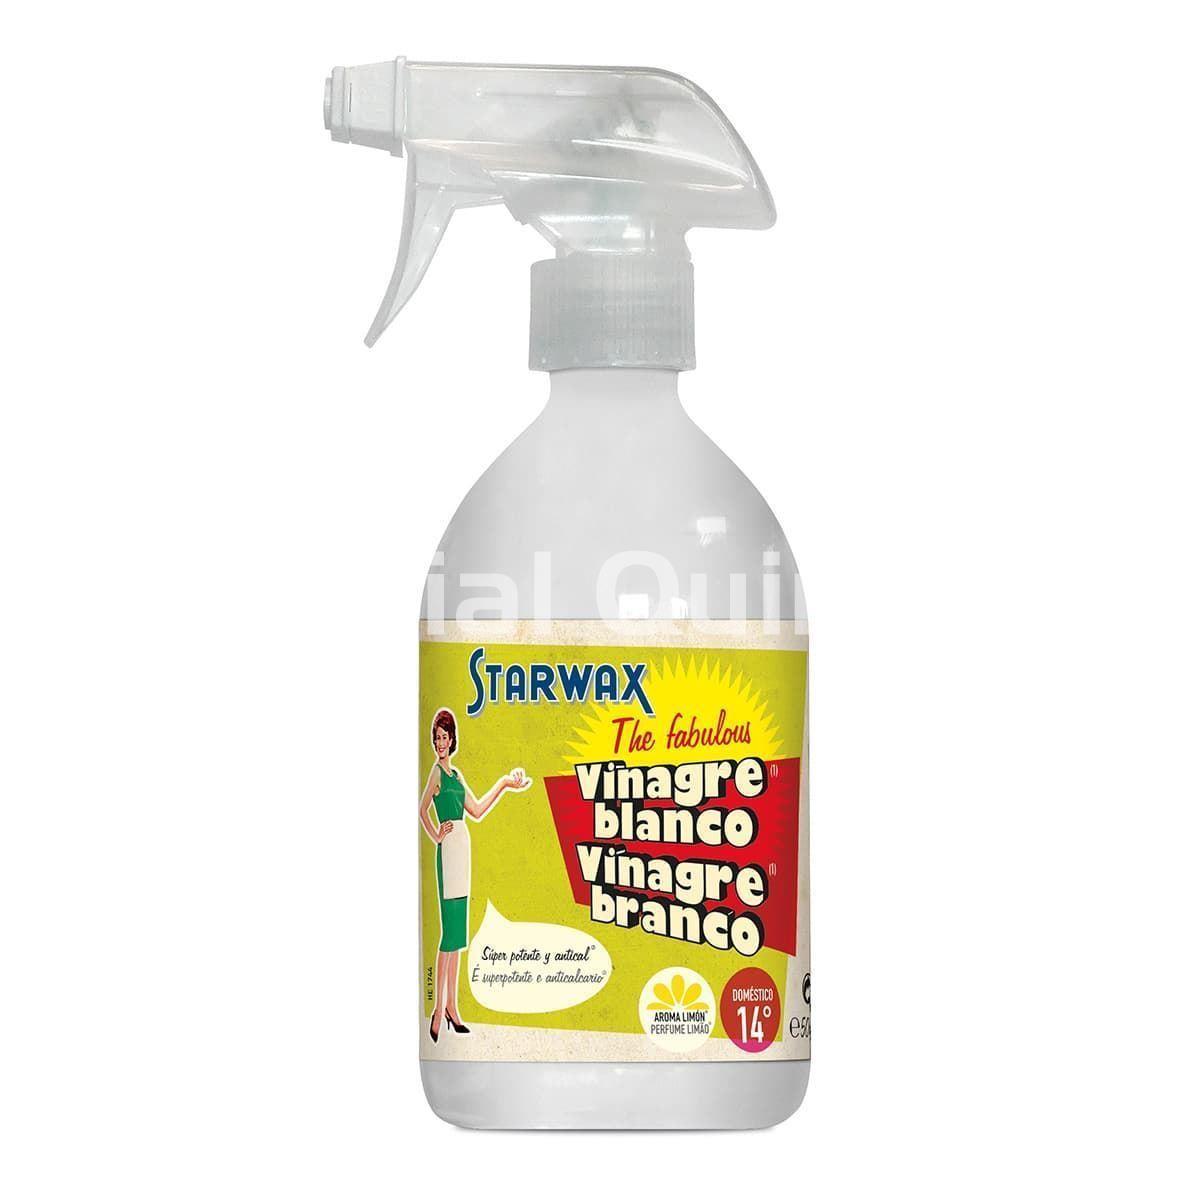 3 usos del vinagre blanco de limpieza: - Como abrillantador y multiuso